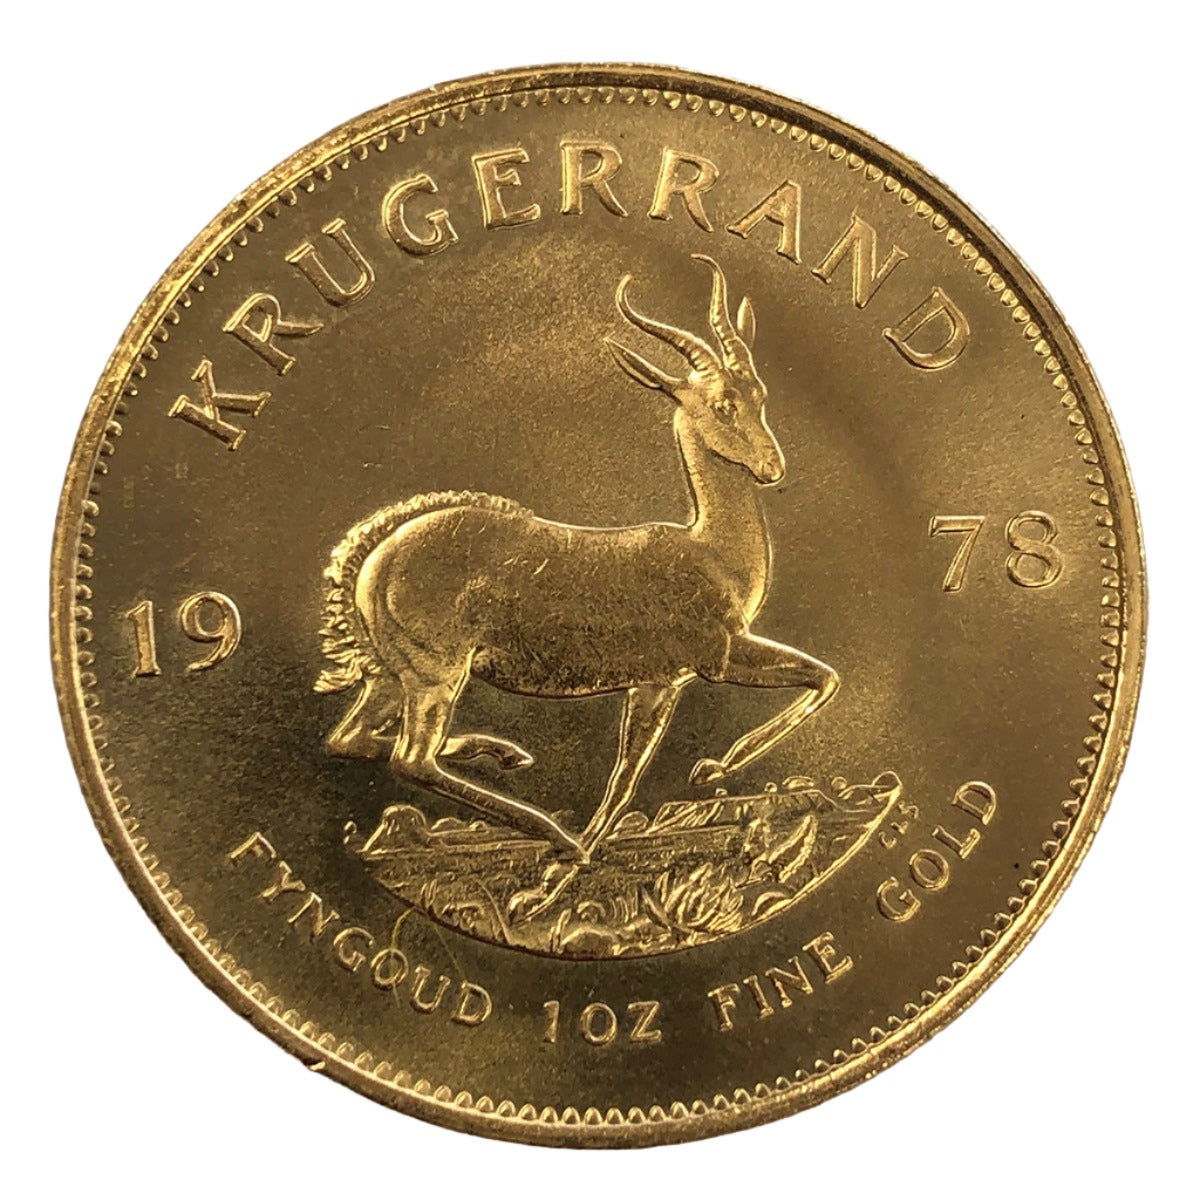 1978 South African 1 oz Gold Krugerrand